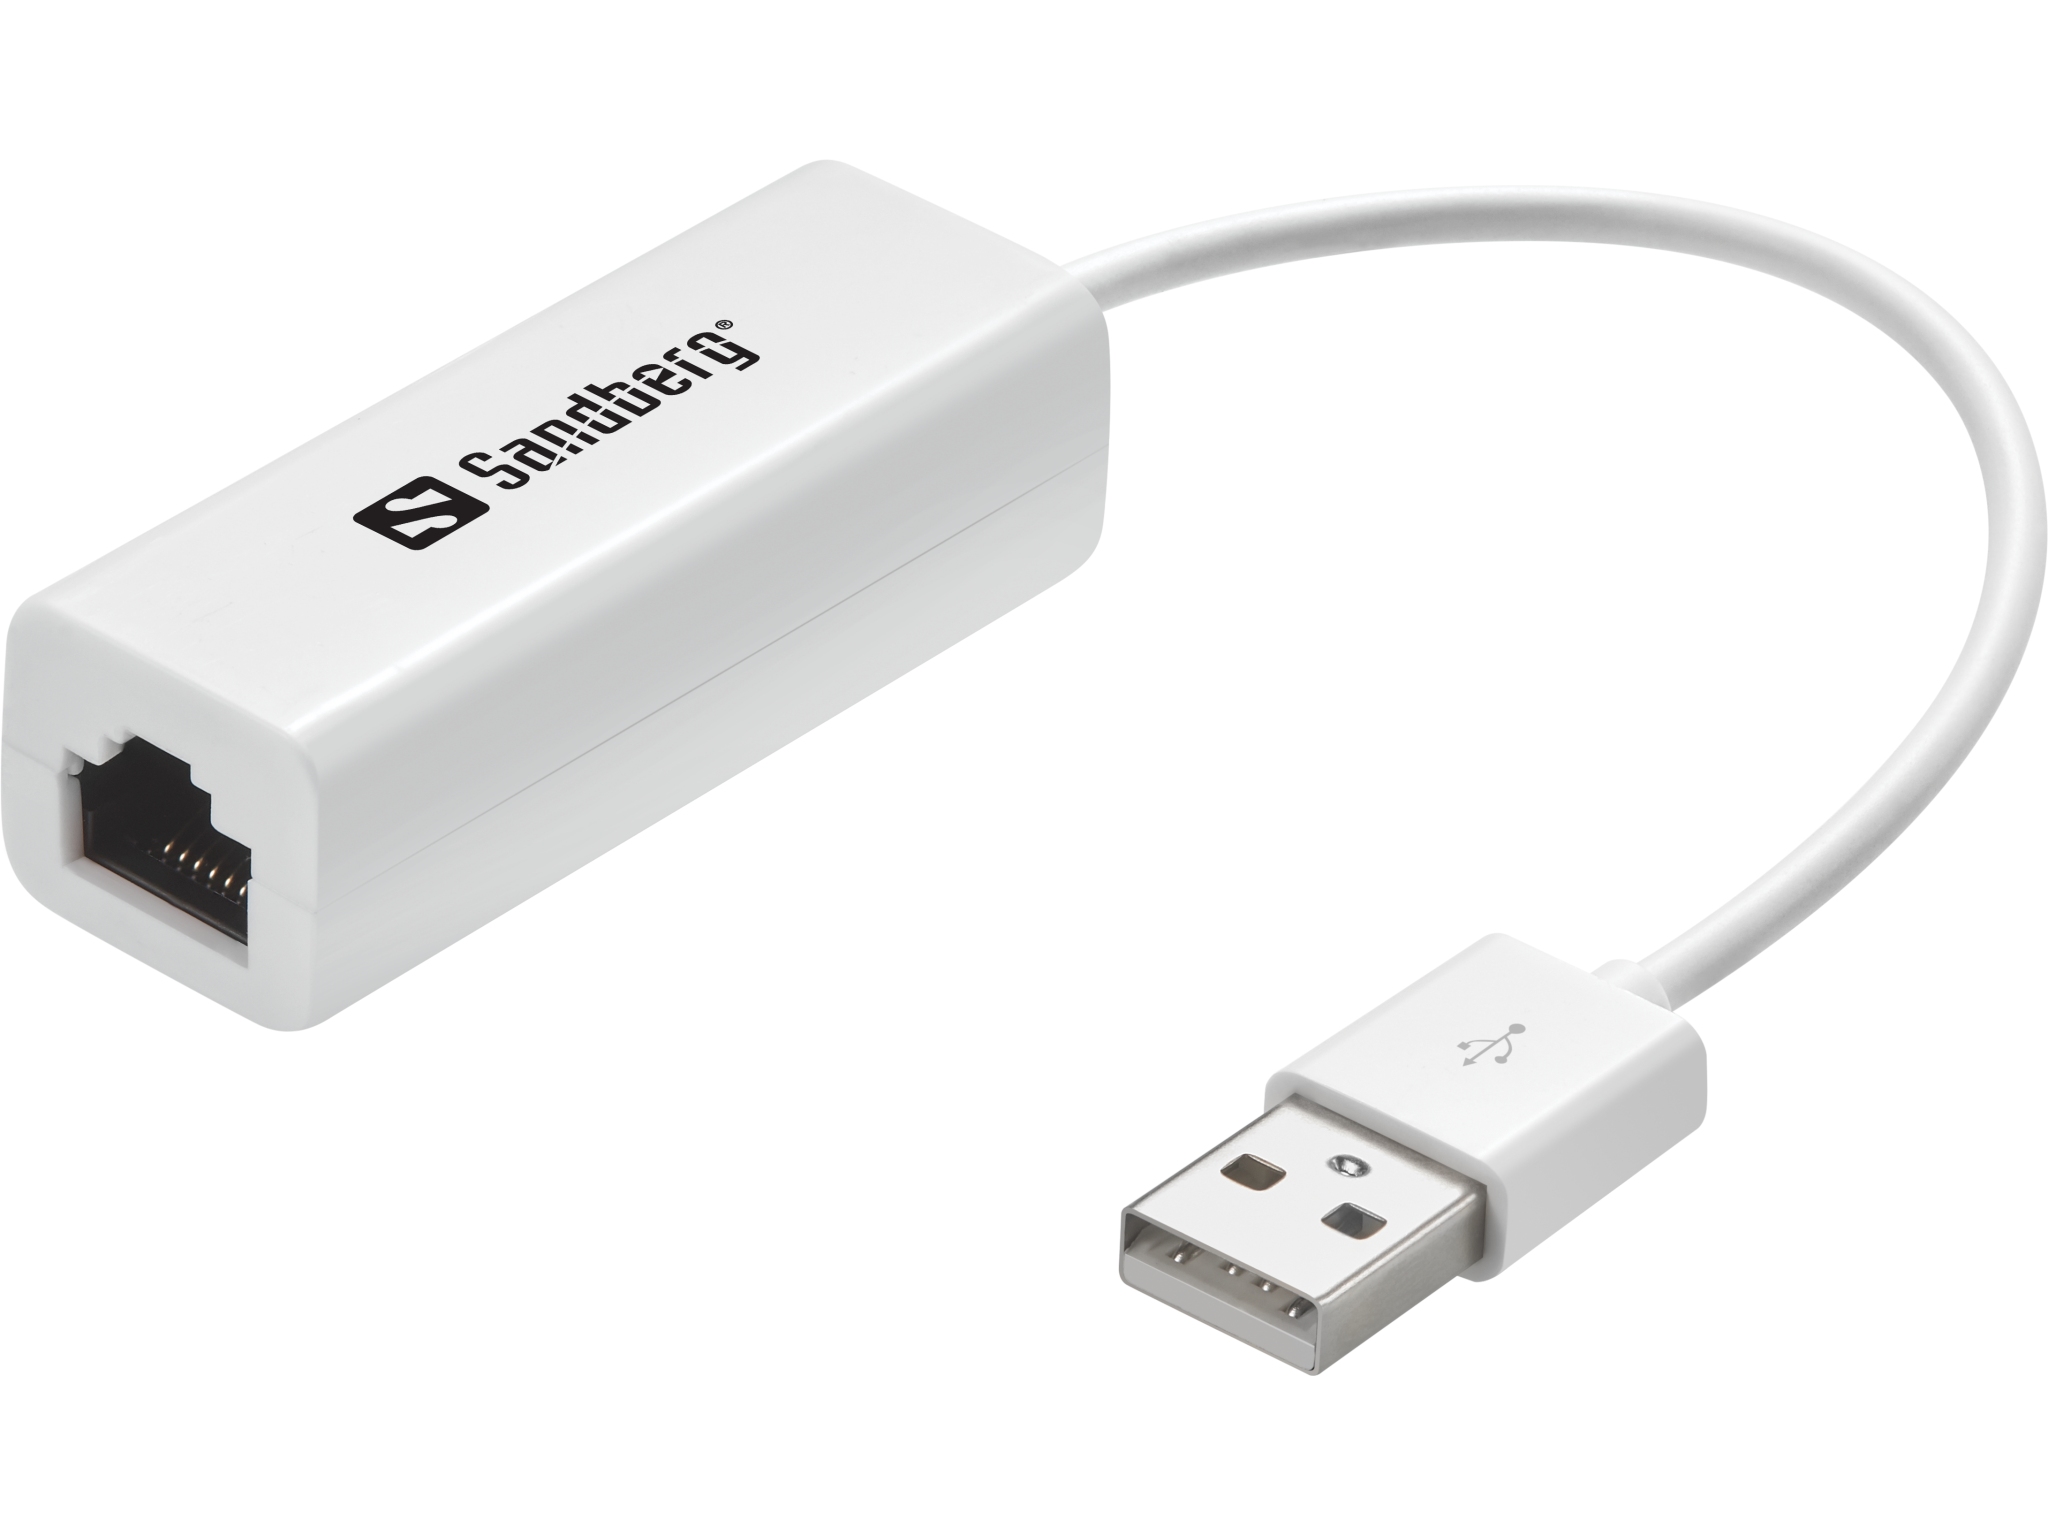 Billede af Sandberg netværksadapter, USB 2.0 USB hos Pixojet